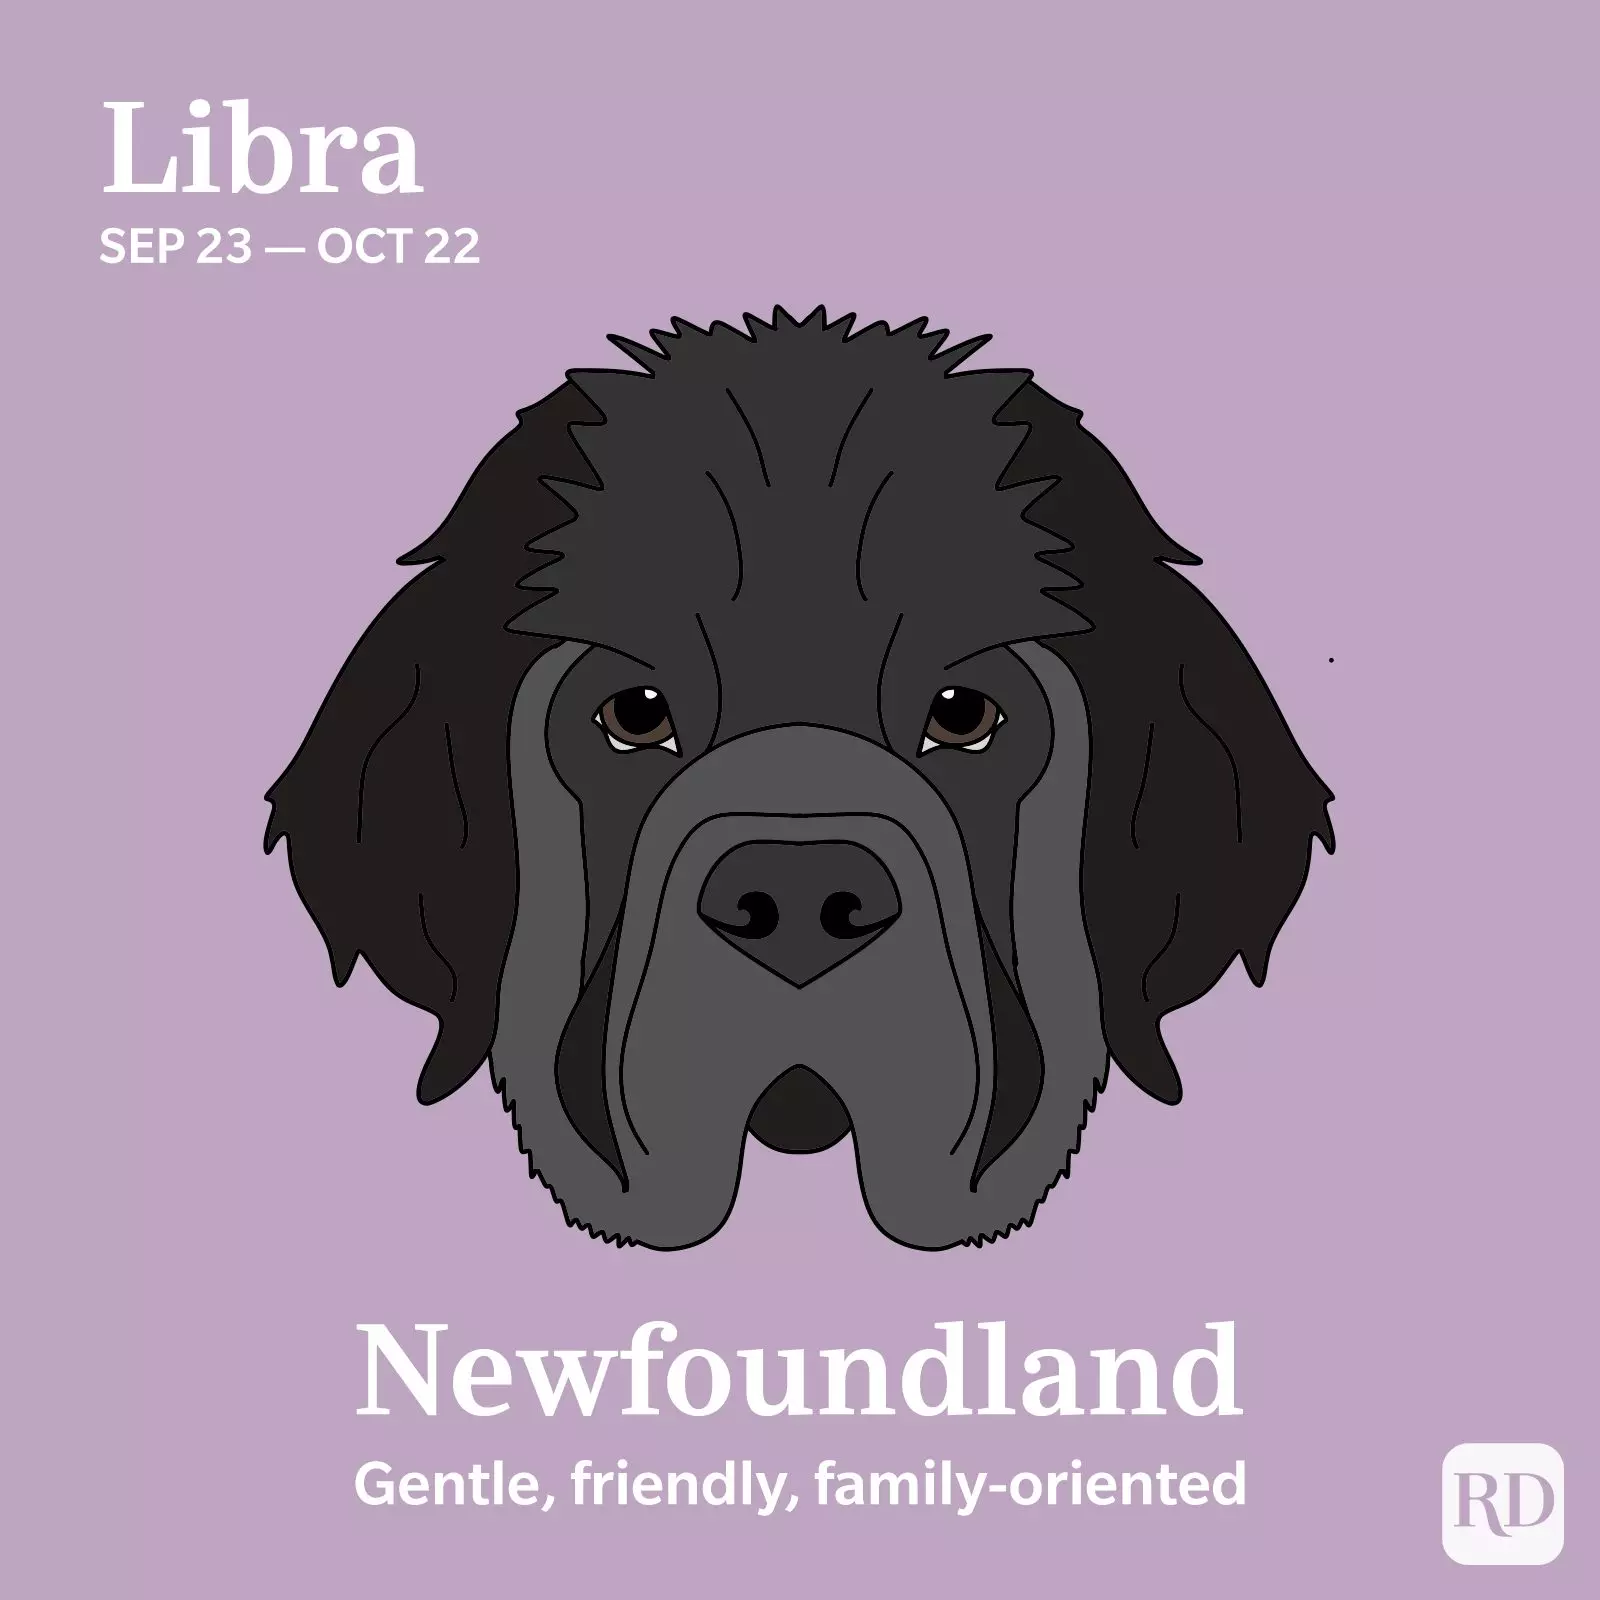 Libra: Newfoundland